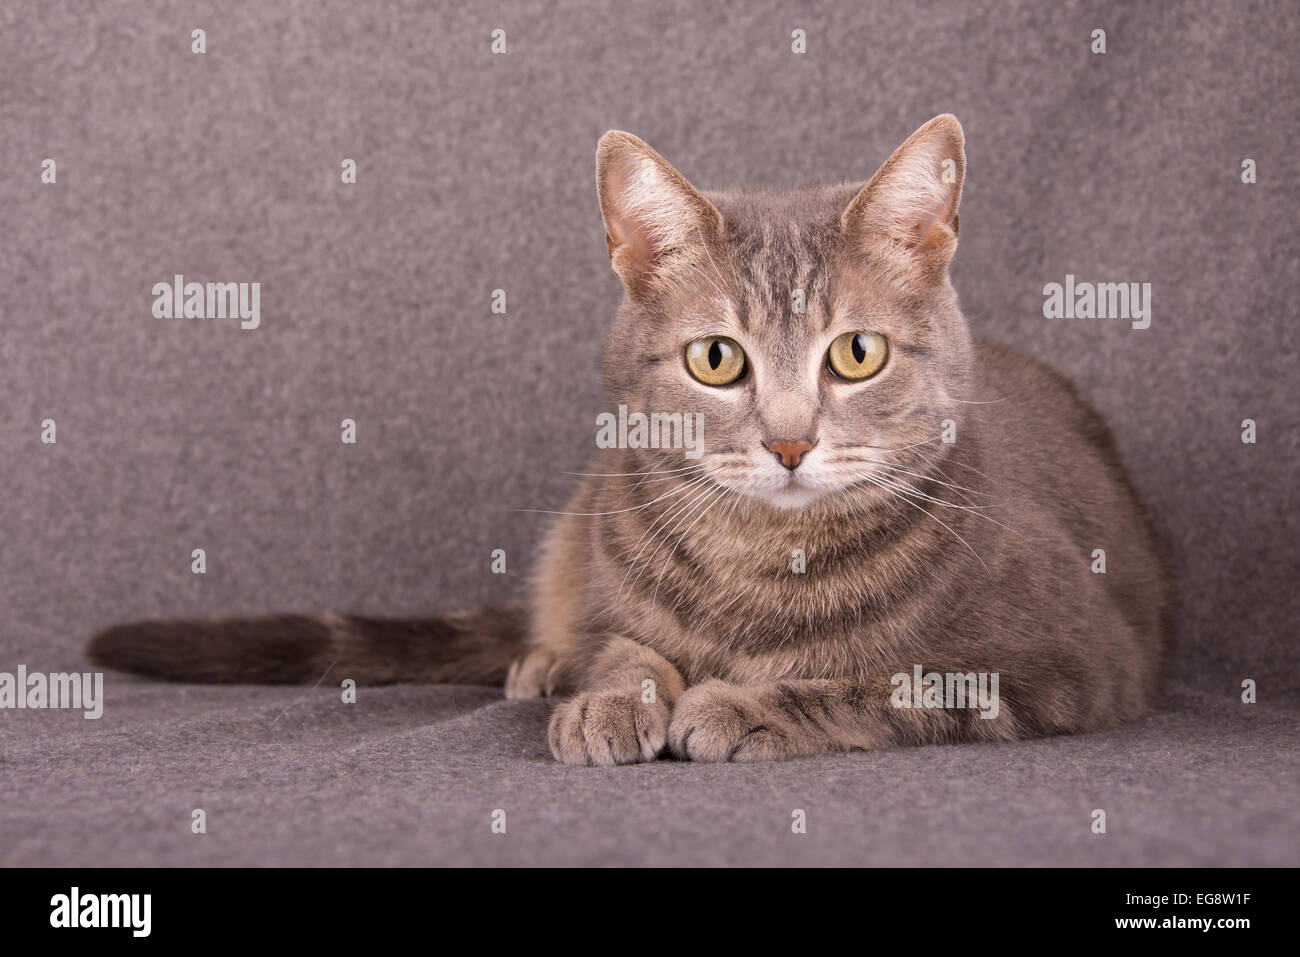 Gato atigrado azul acostado contra el fondo gris claro Foto de stock